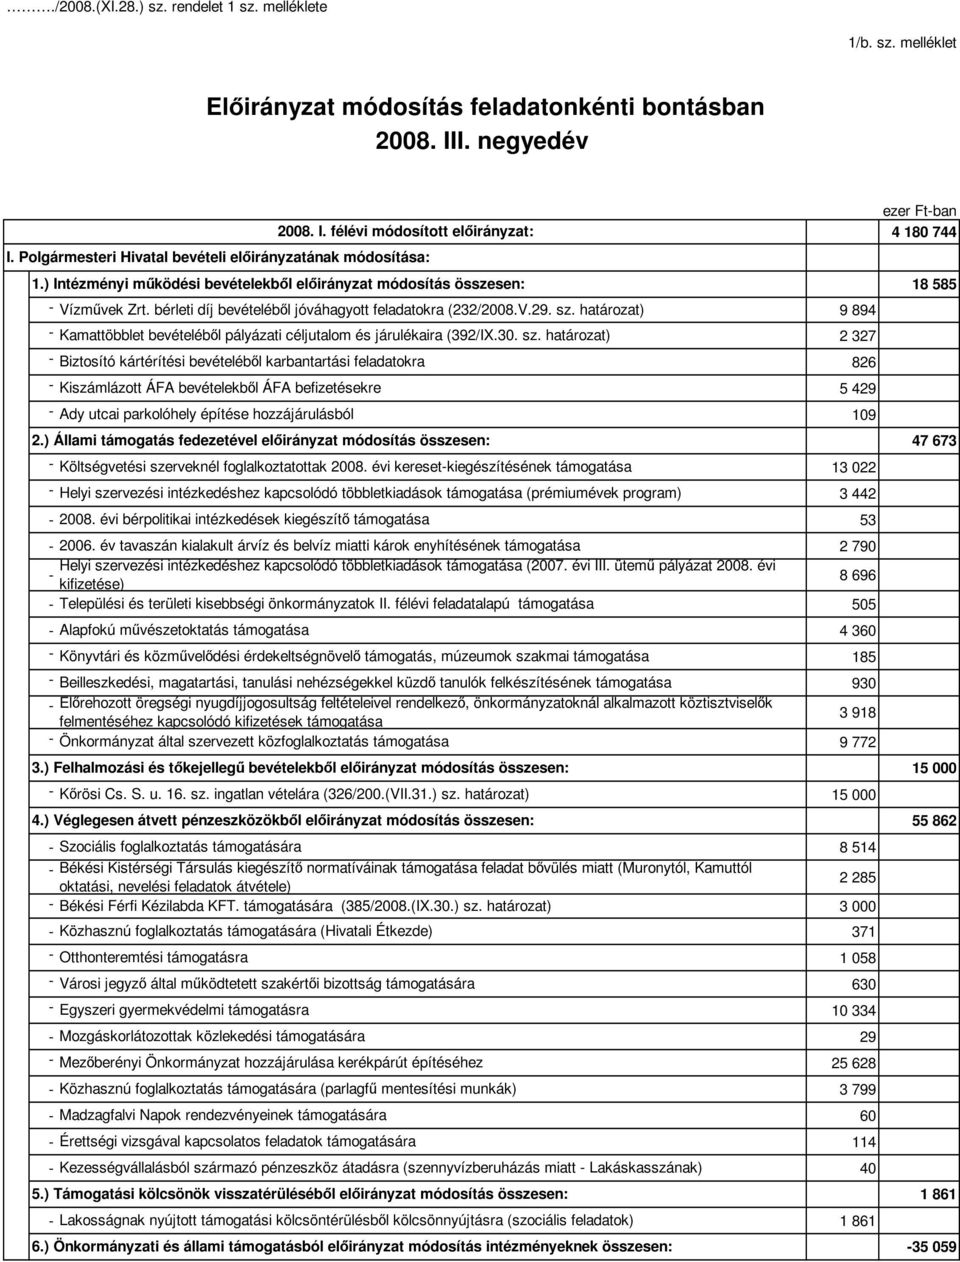 bérleti díj bevételébıl jóváhagyott feladatokra (232/2008.V.29. sz.